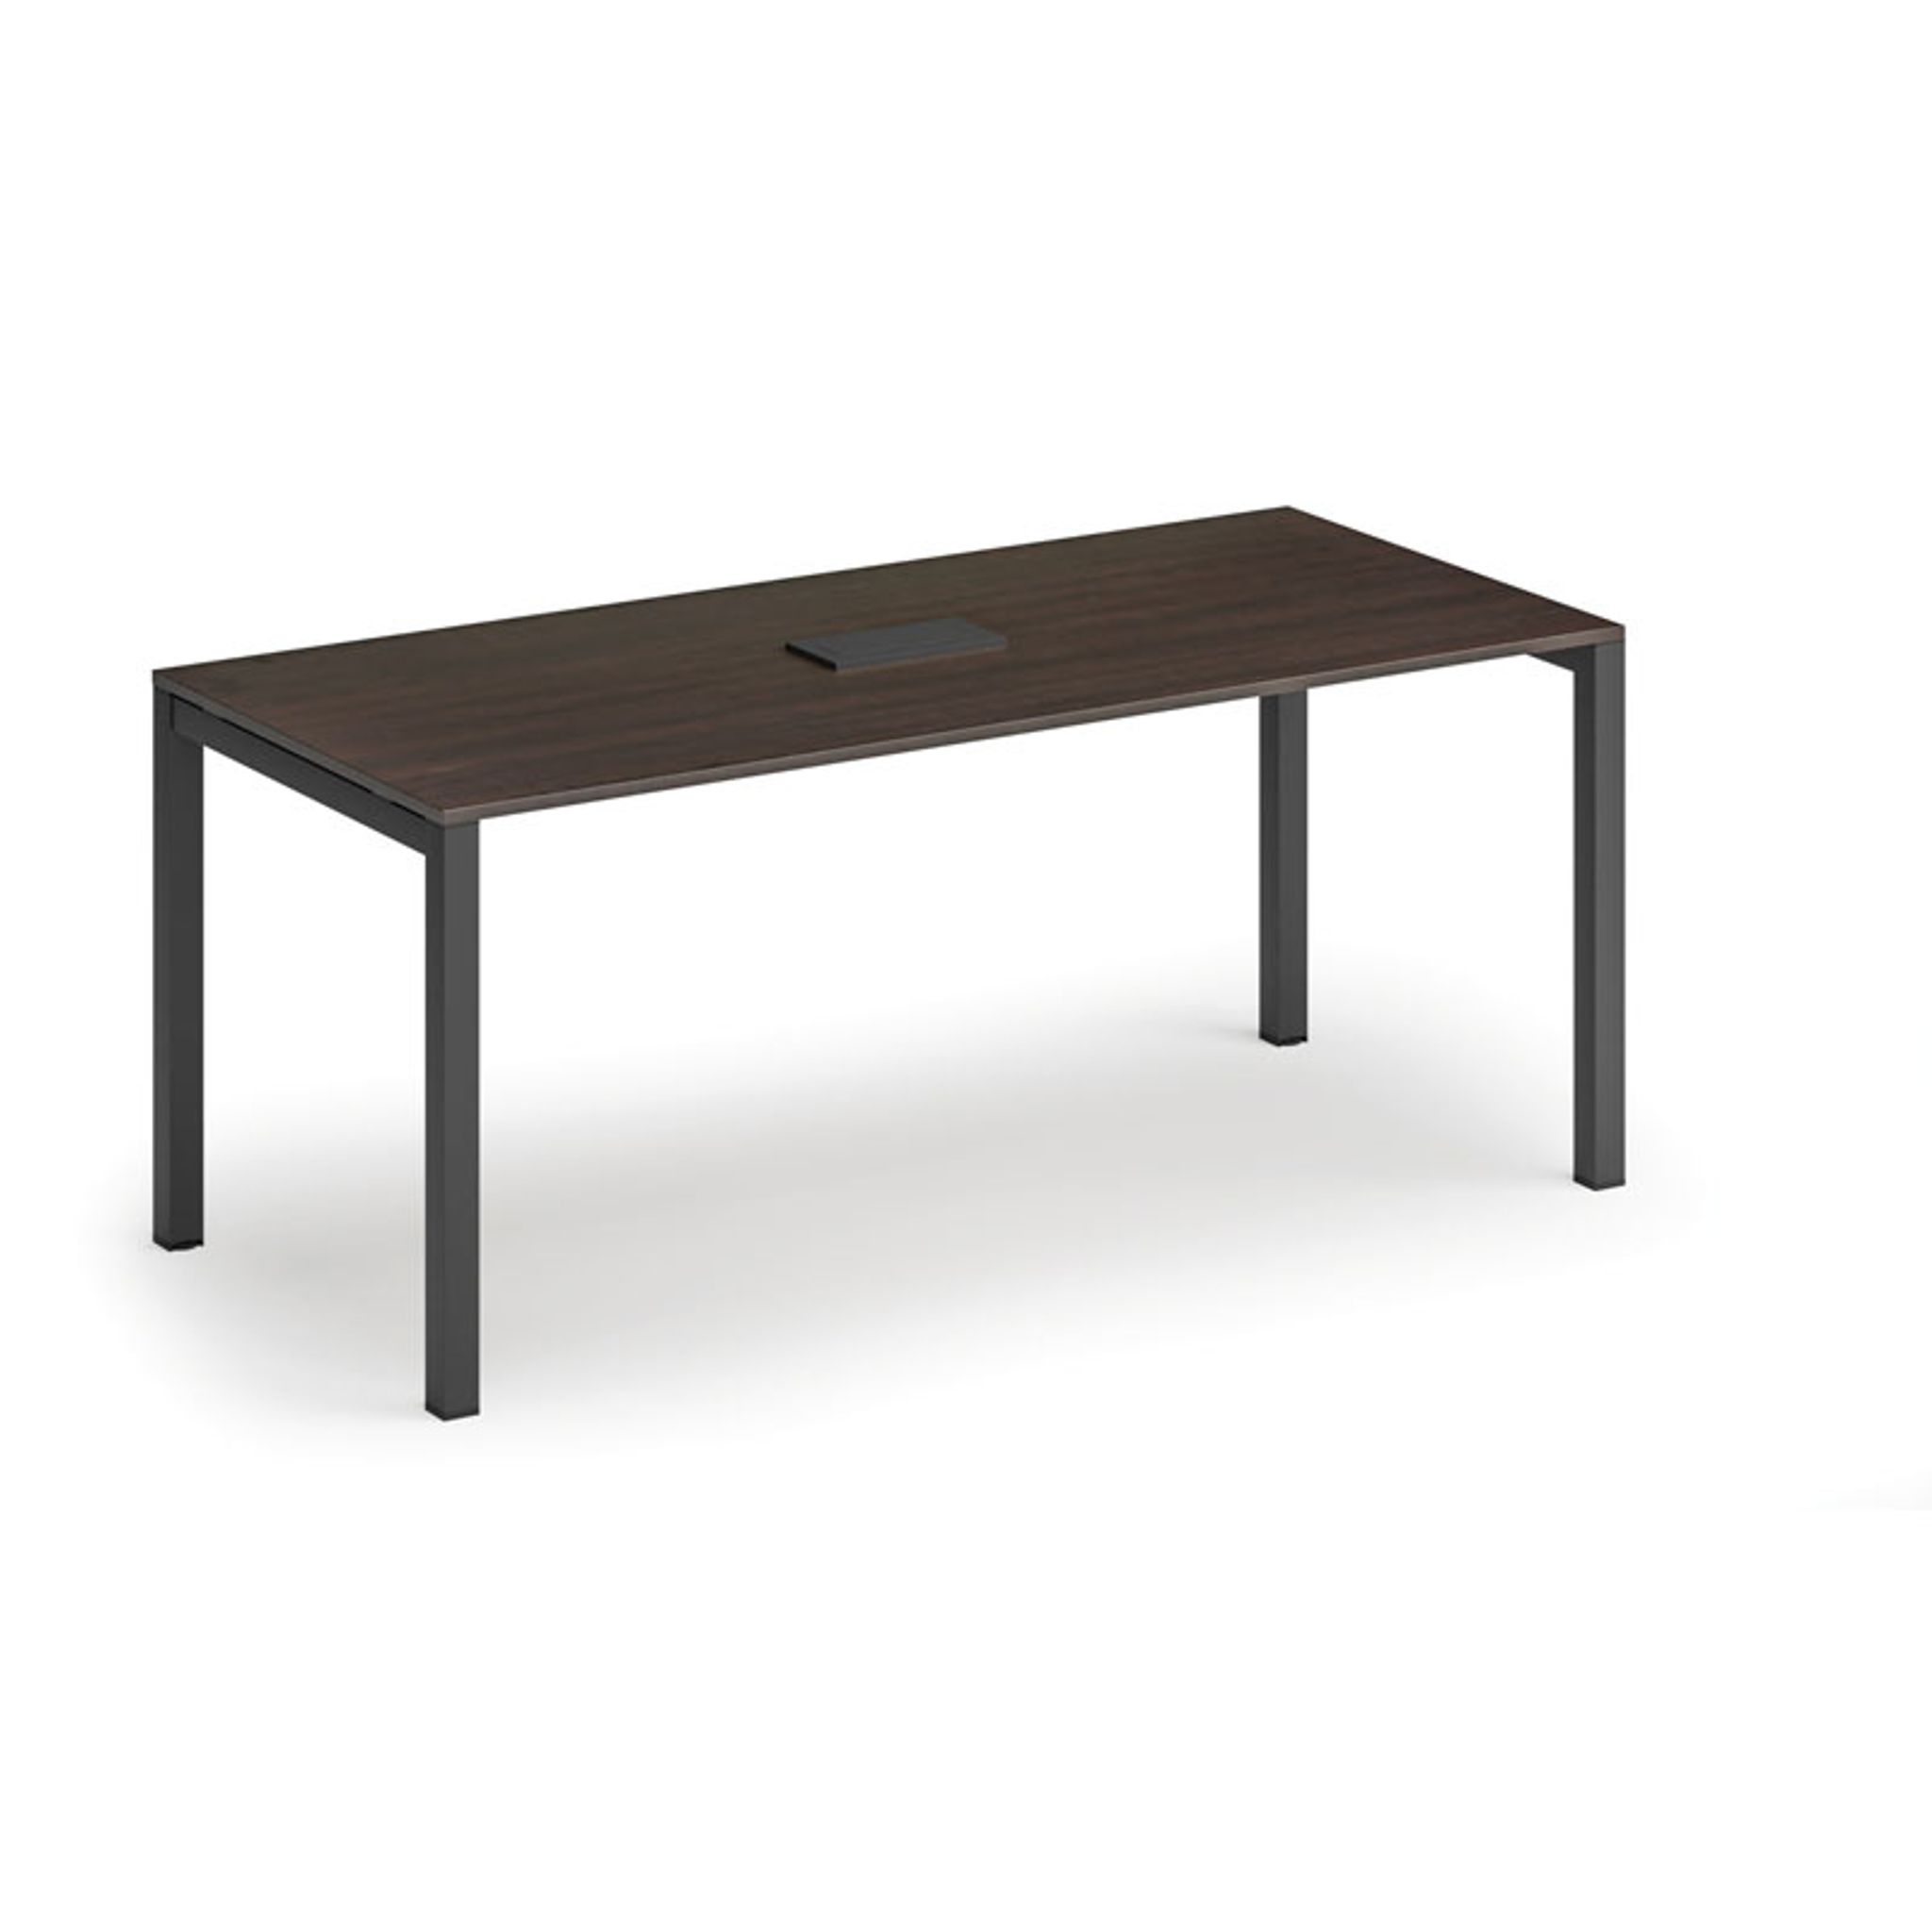 Stůl SQUARE 1800 x 800 x 750, wenge + stolní zásuvka TYP V, černá